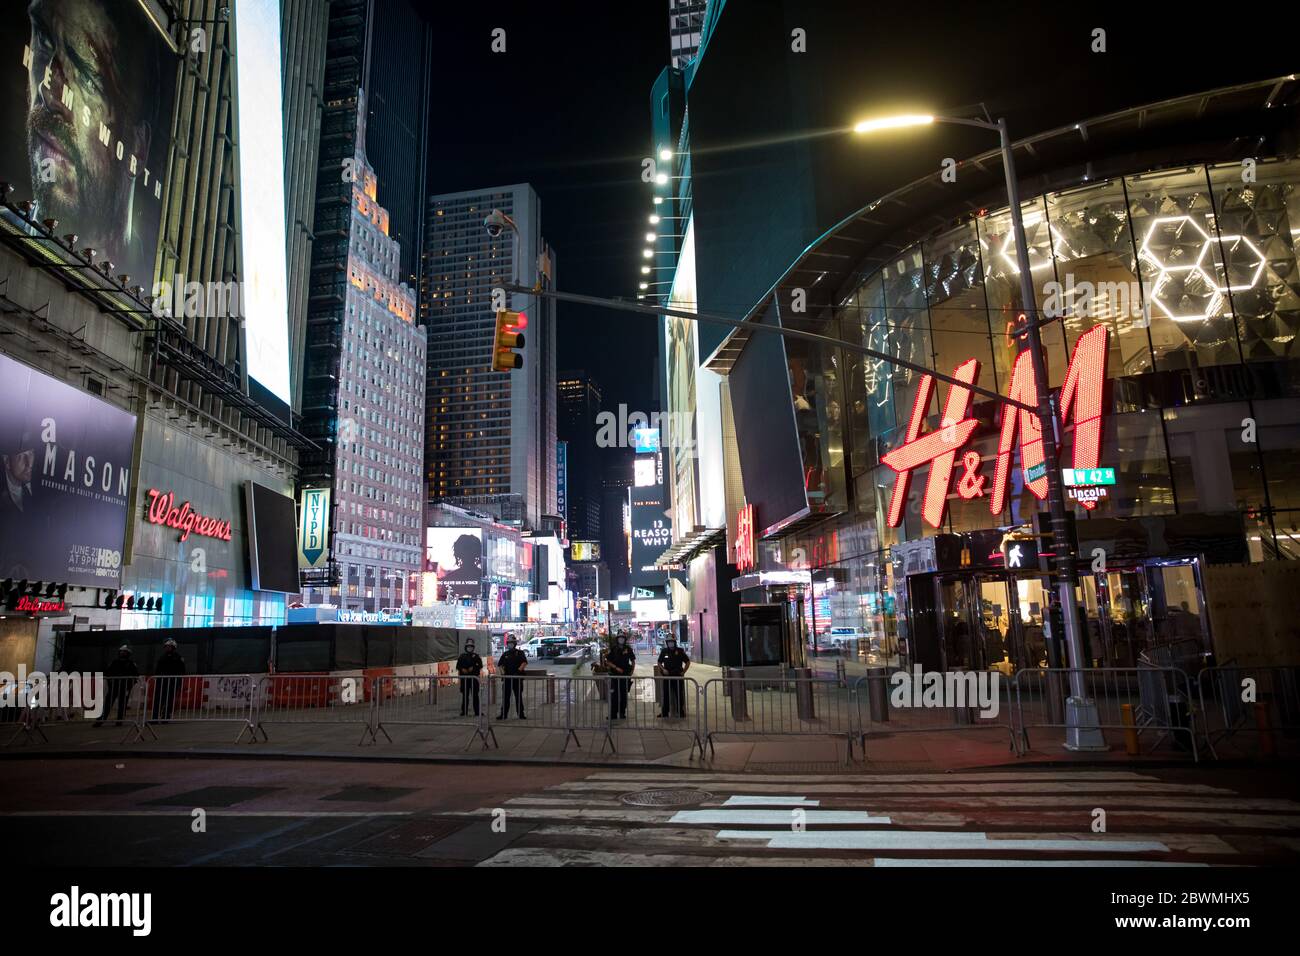 (200602) -- NEW YORK, le 2 juin 2020 (Xinhua) -- les policiers gardent la garde à Times Square après le couvre-feu à New York, aux États-Unis, le 1er juin 2020. La ville de New York a été mise sous le couvre-feu lundi soir pour contenir les manifestations violentes à la suite de la mort de l'homme noir George Floyd, selon une déclaration conjointe du maire Bill de Blasio et du gouverneur de l'État de New York Andrew Cuomo. (Photo de Michael Nagle/Xinhua) Banque D'Images